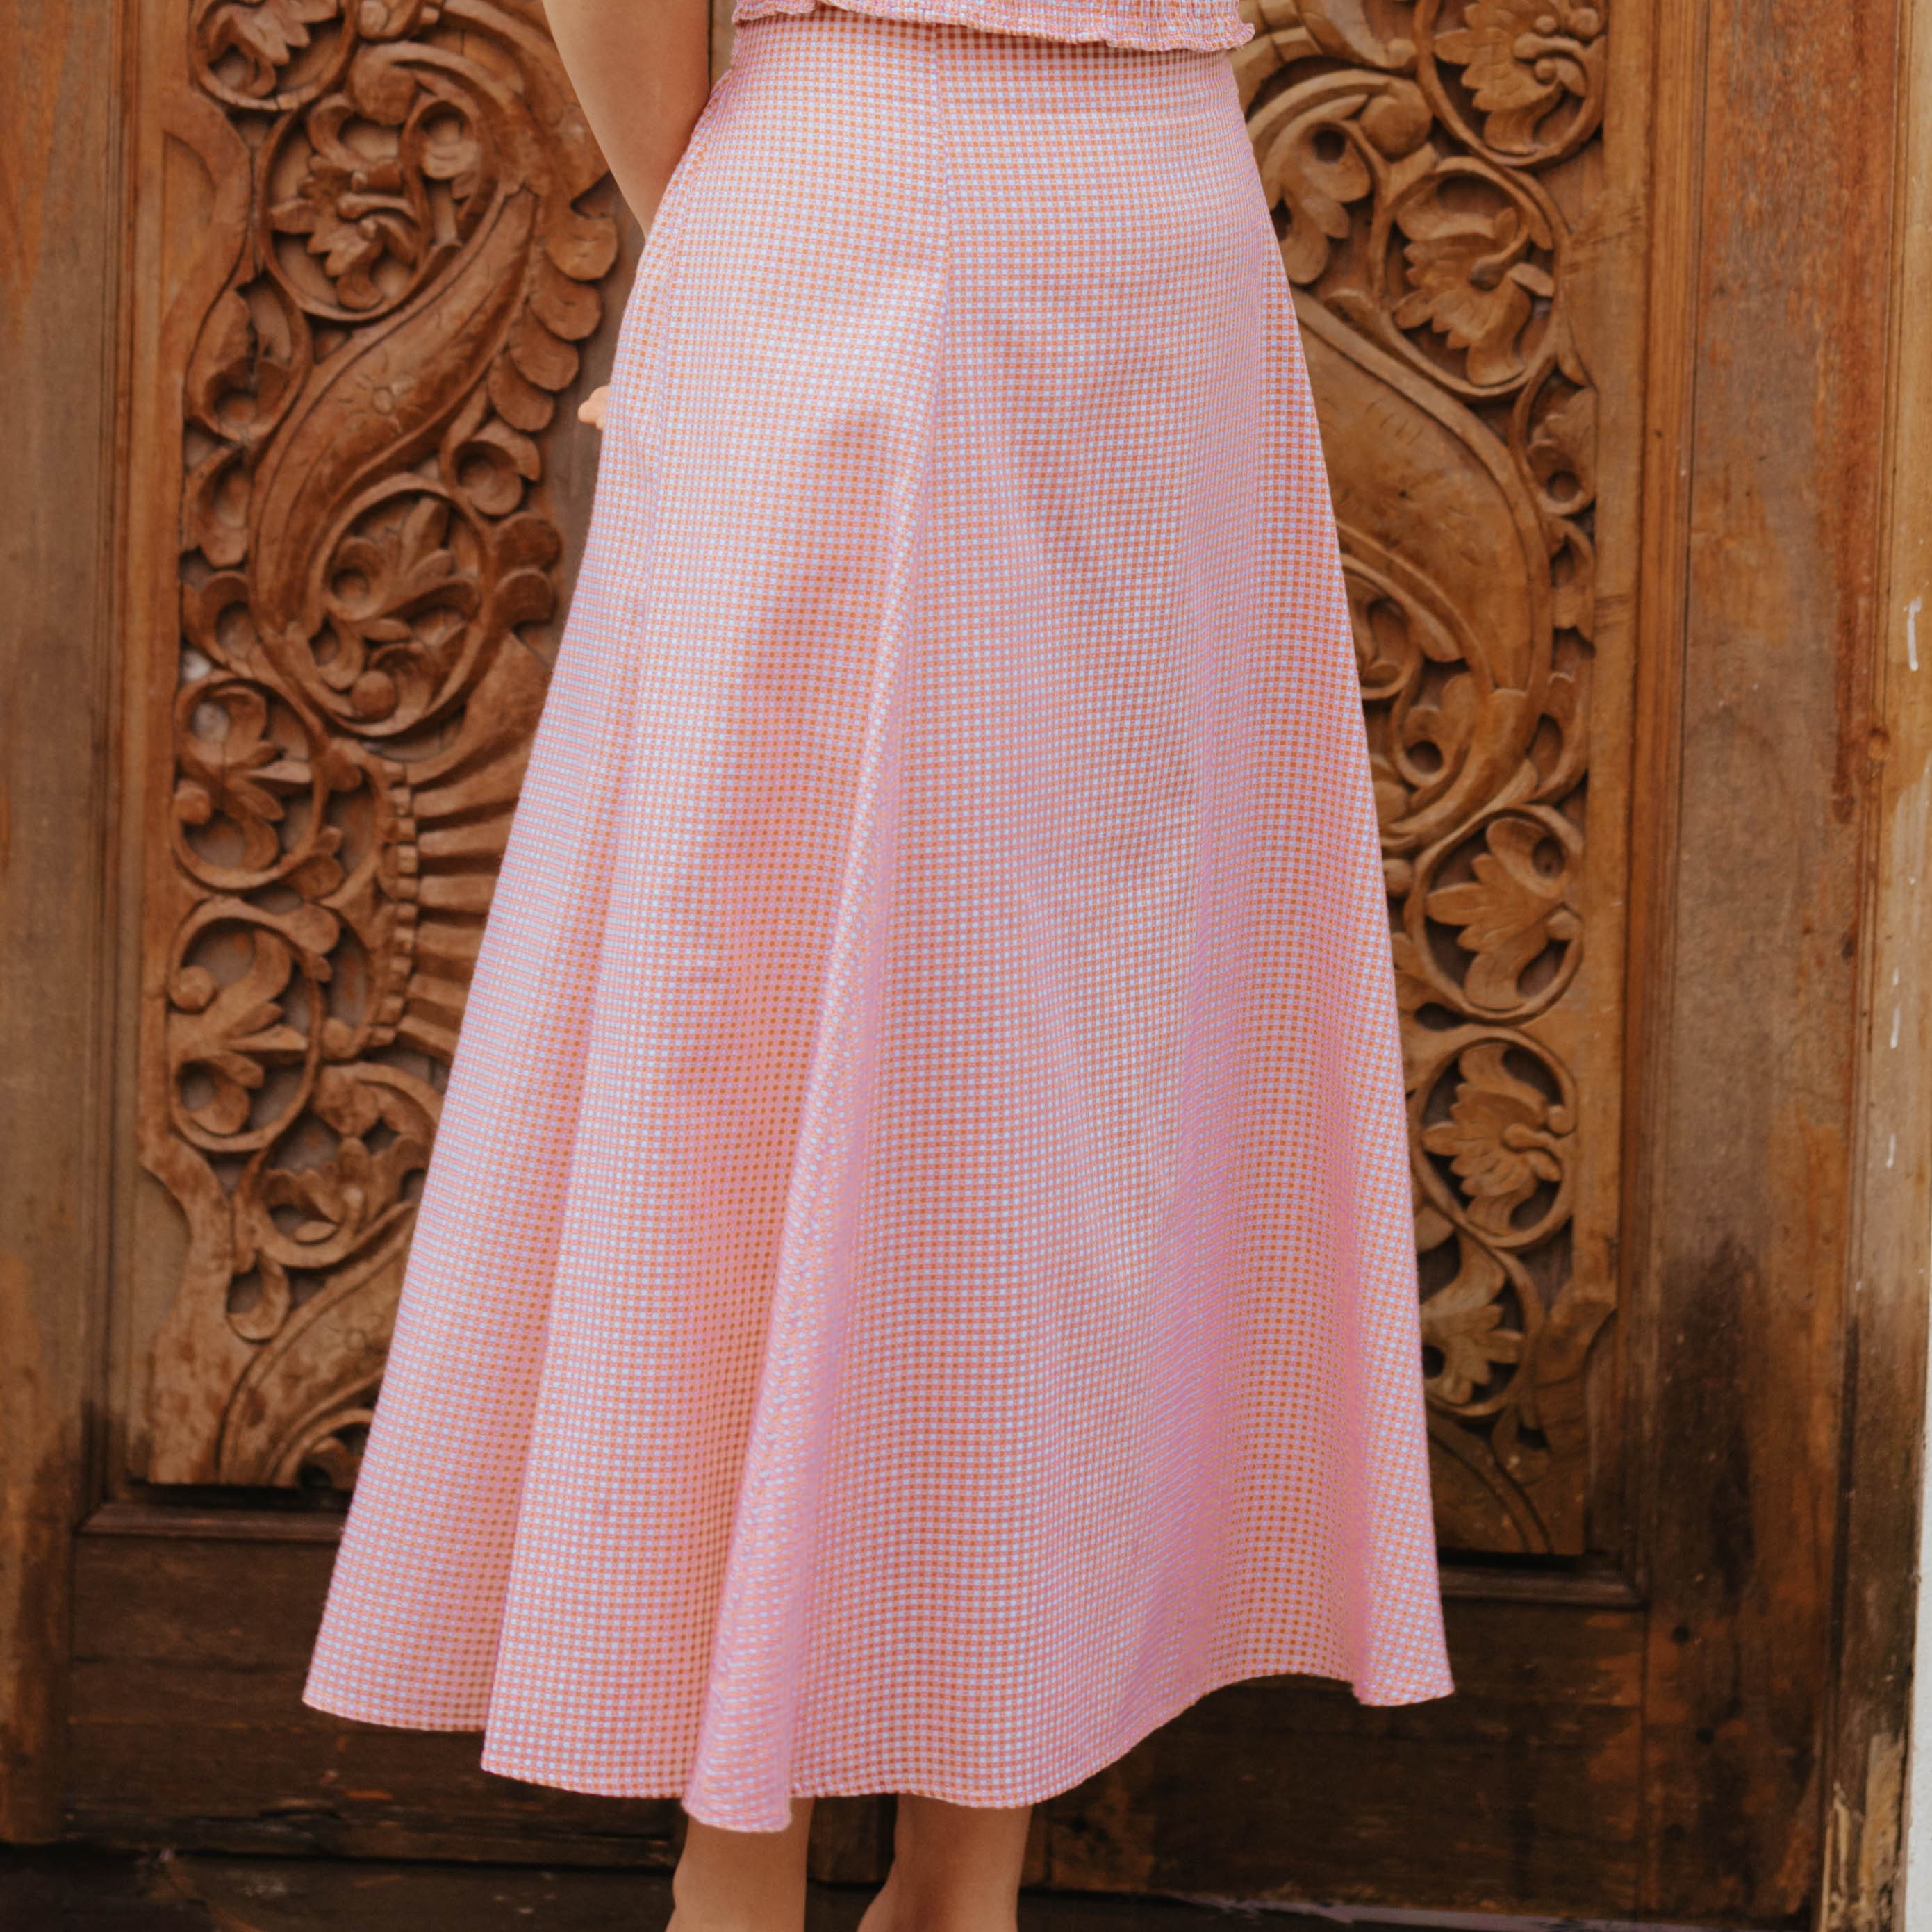 Lolliestory Alaina Cotton Skirt ( Skirt Only )